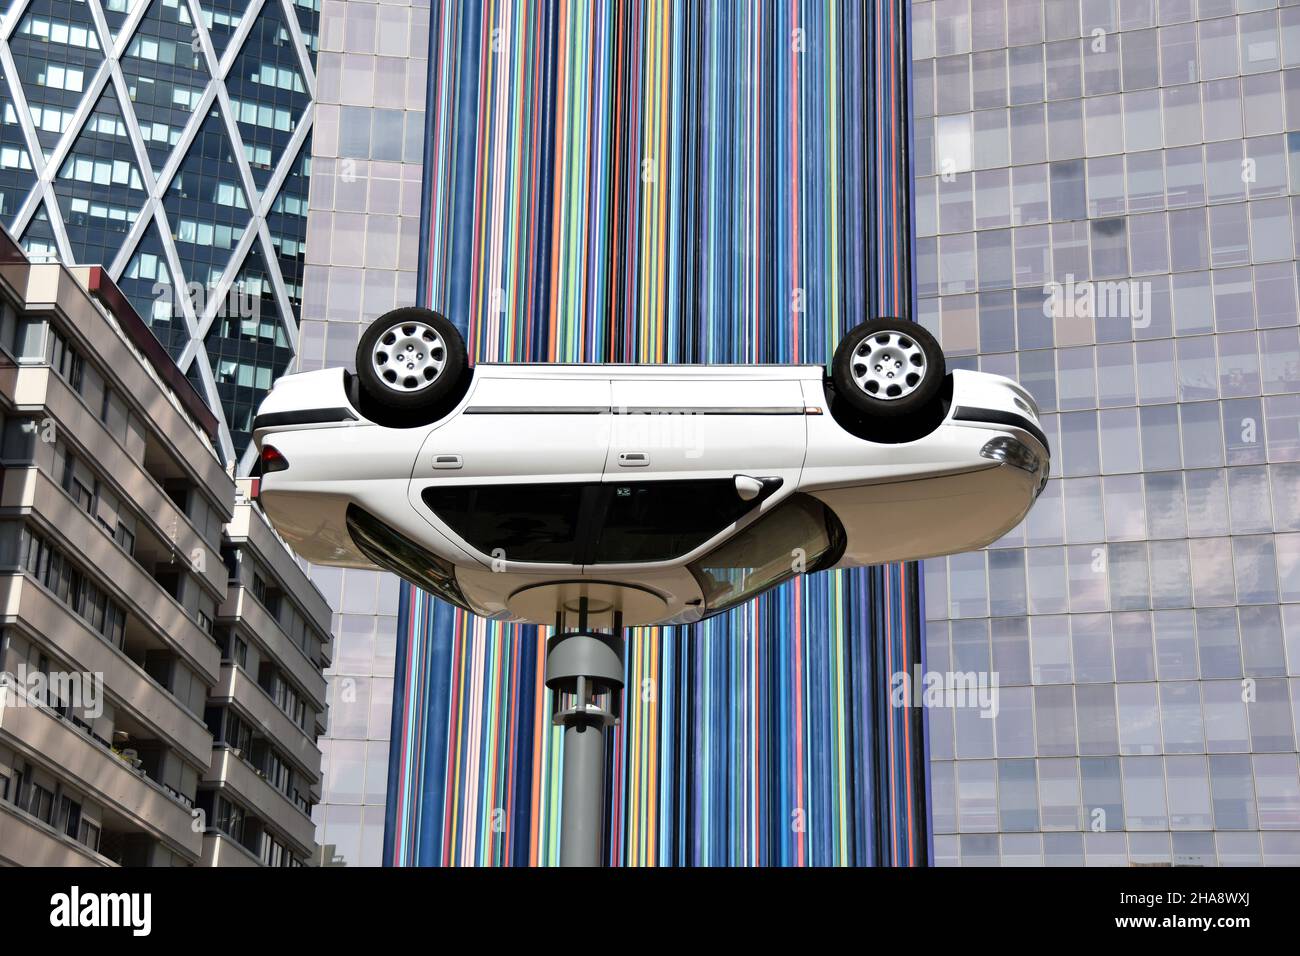 Dieses Kunstwerk von Benedetto Bufalino ist ein umgedrehtes Auto, um es in eine Straßenbeleuchtung zu verwandeln. Hinter diesem Kunstwerk steht le moretti. Stockfoto